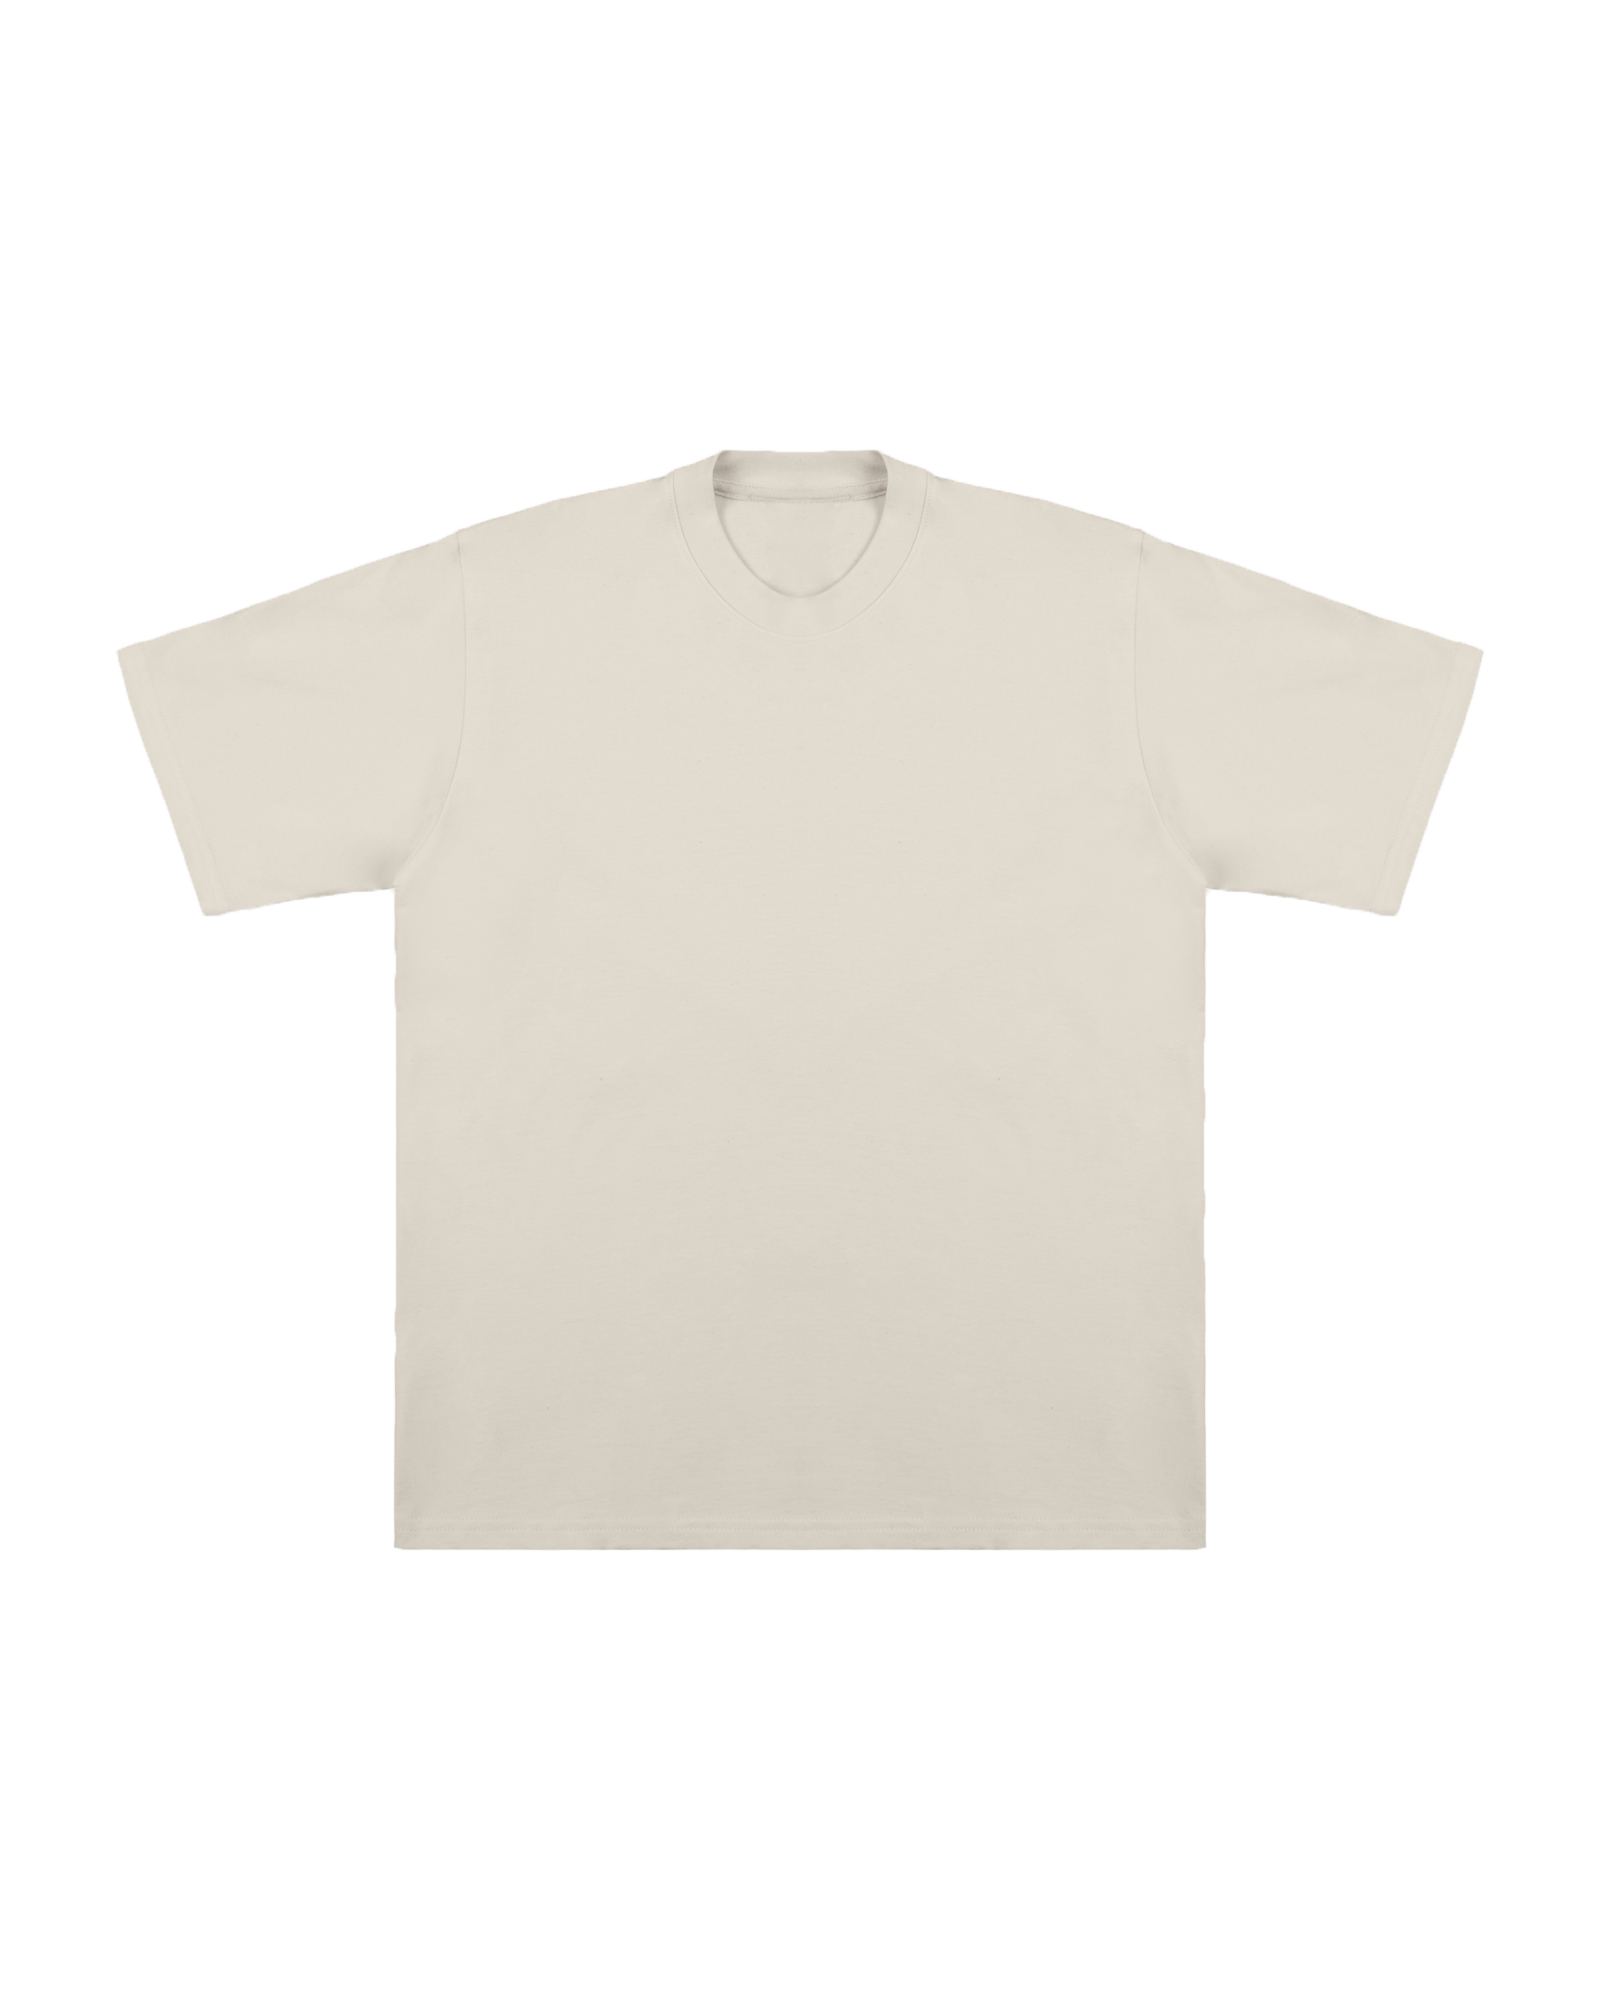 T-shirt en coton 100% recyclé